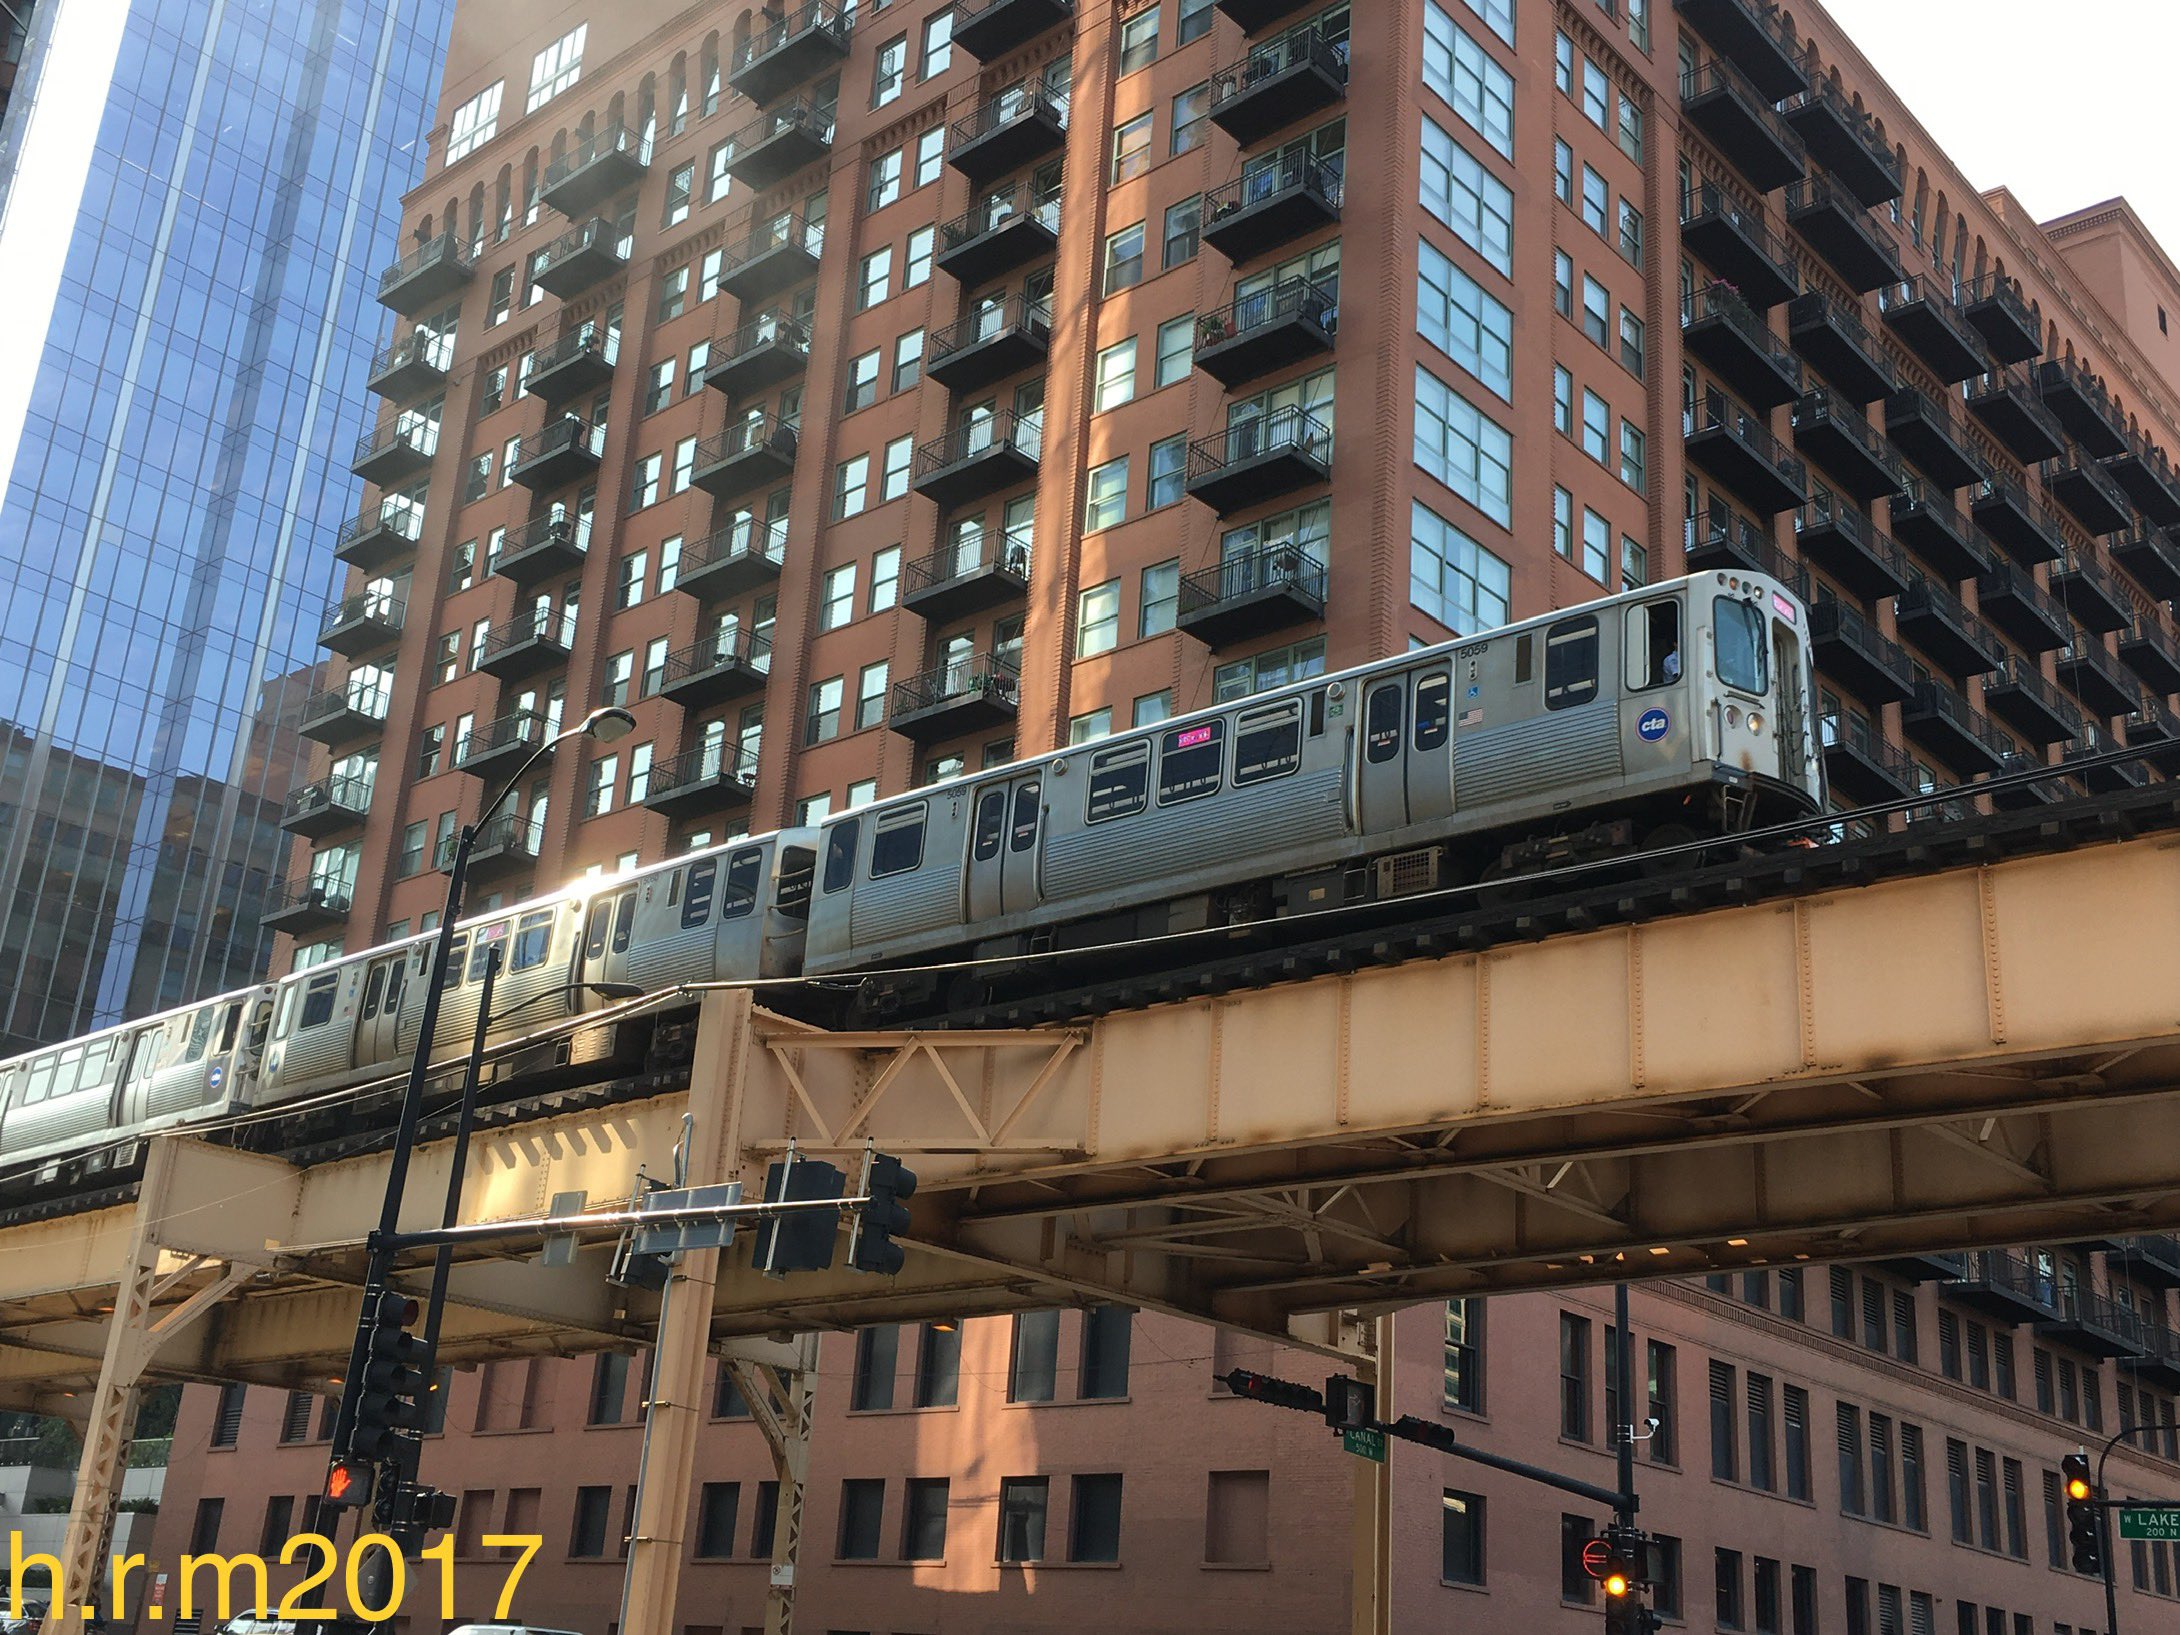 H R M17 シカゴの高架鉄道は 必ずかっこよく撮影できてしまいます どんなに適当に撮影したとしても T Co Yxfelotwej Twitter